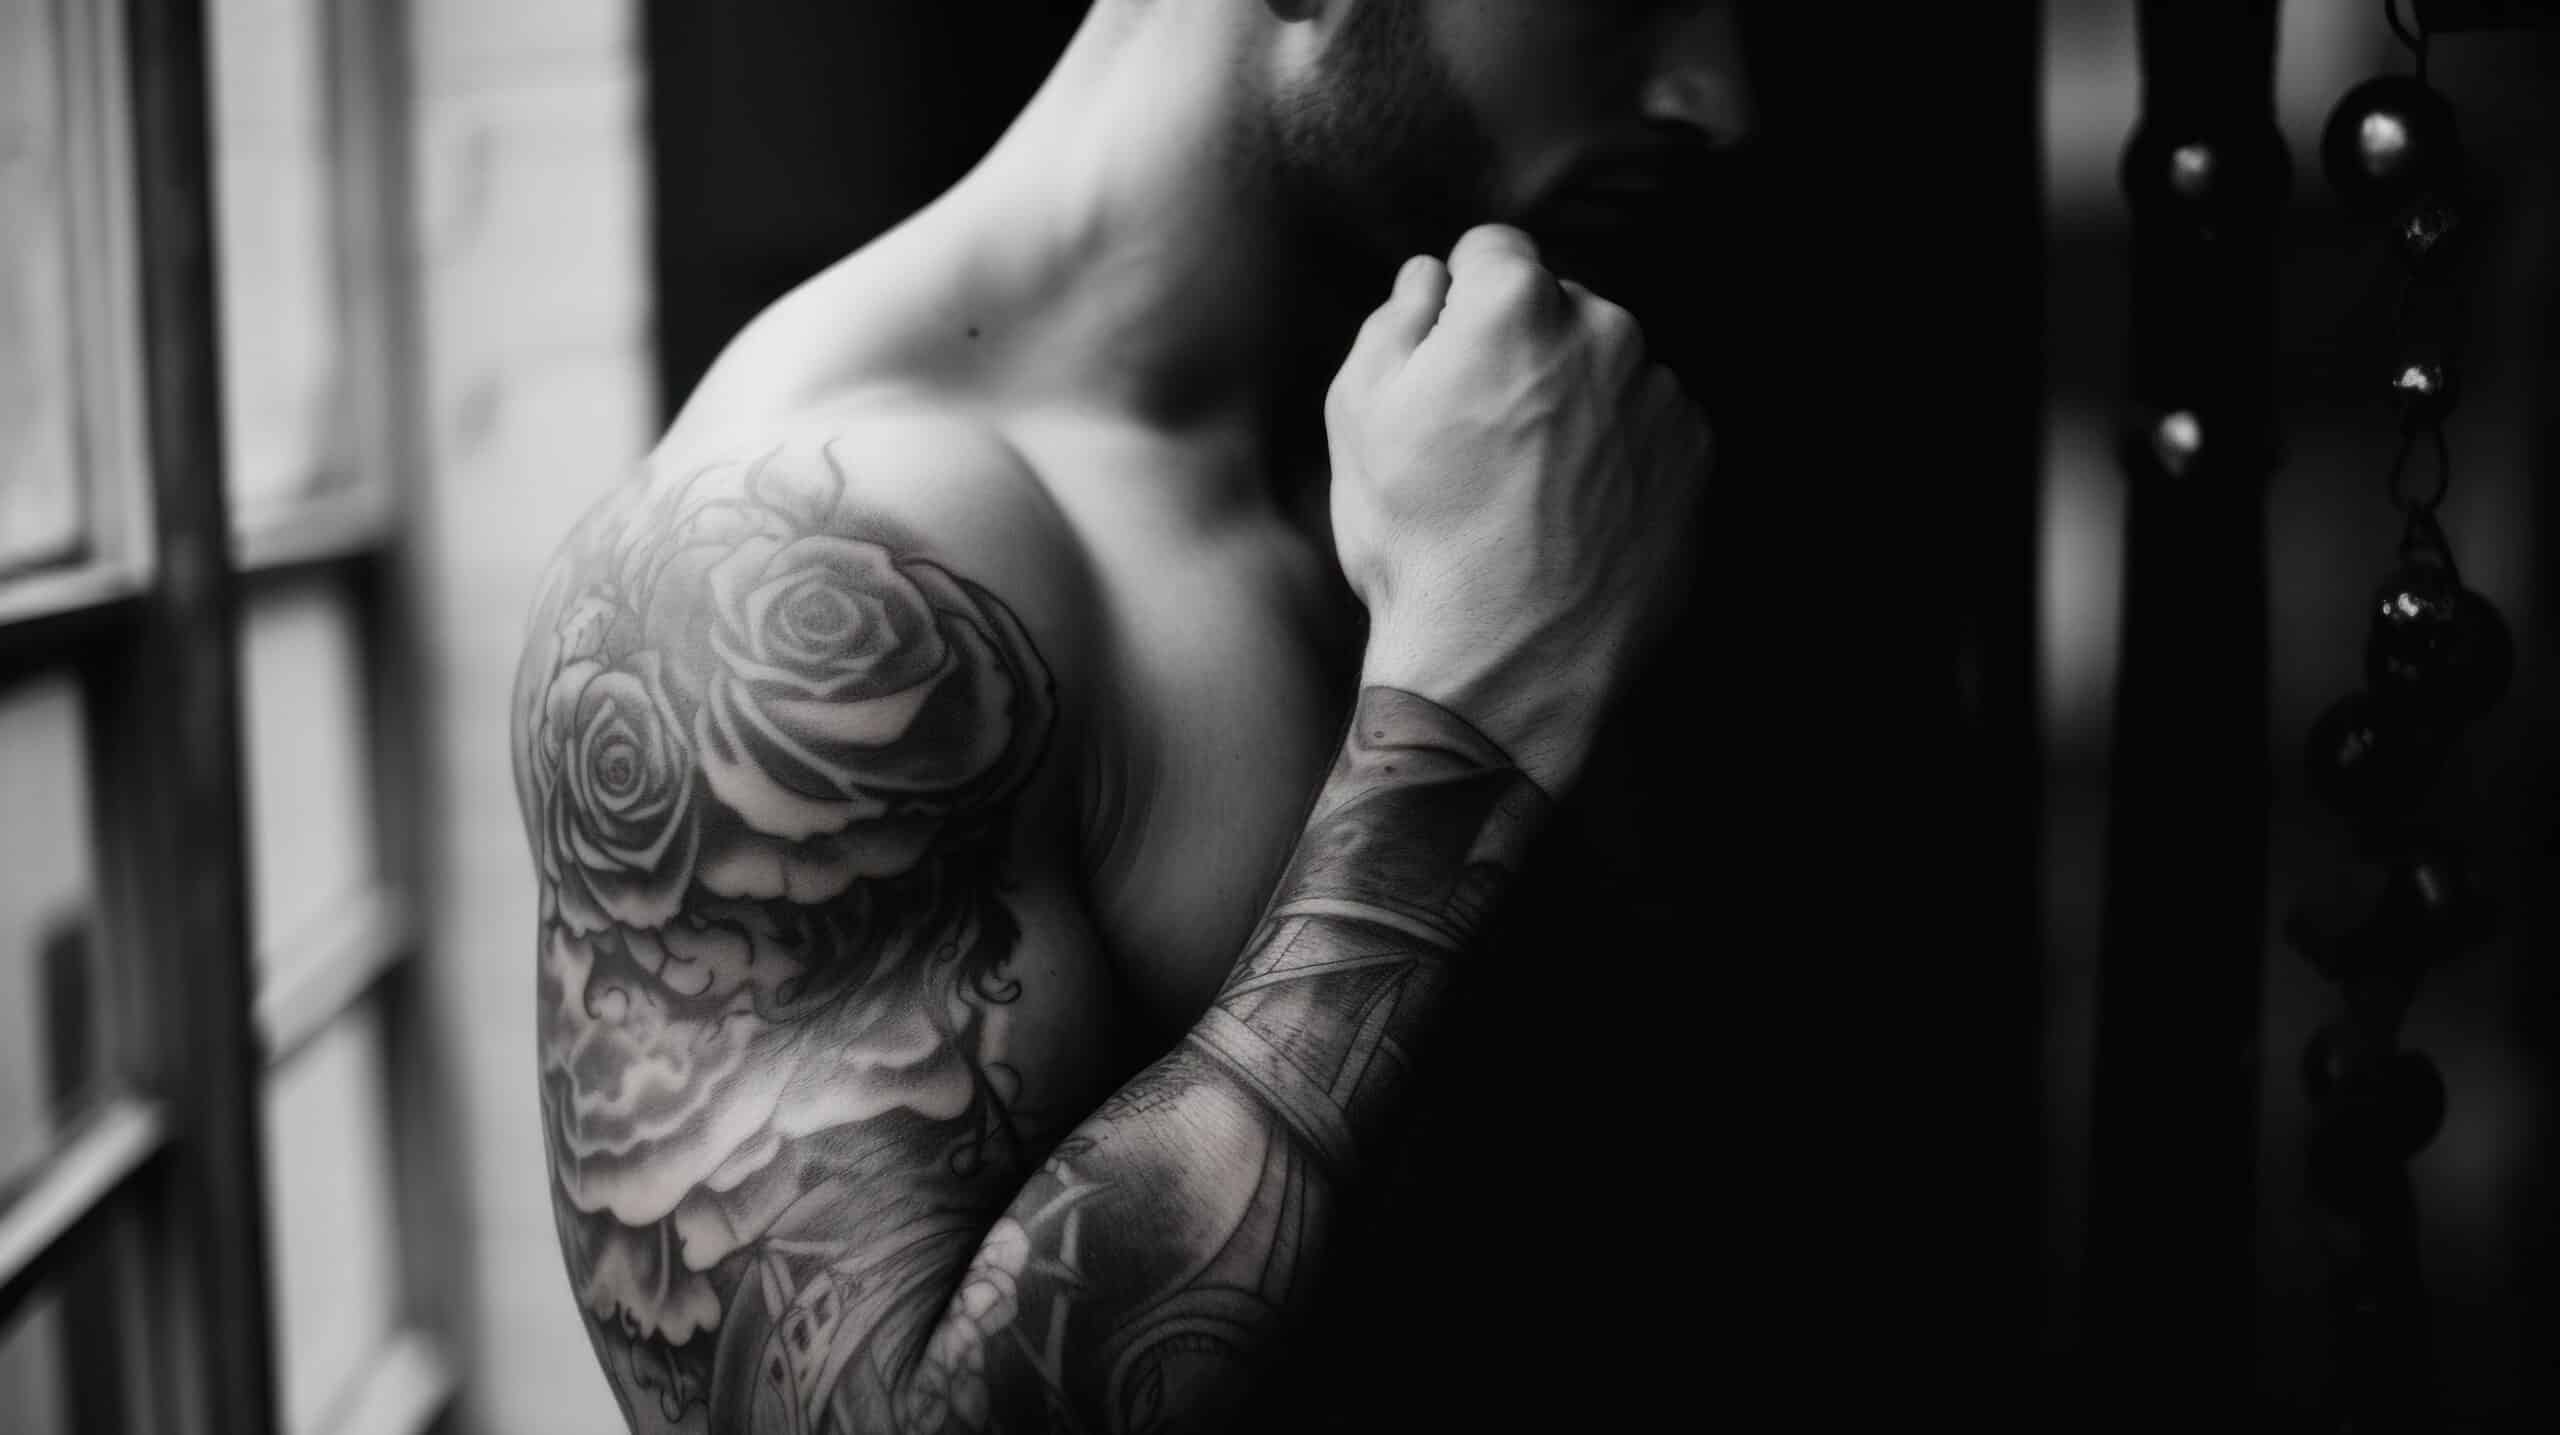 Tatuaż na bicepsie mężczyzny